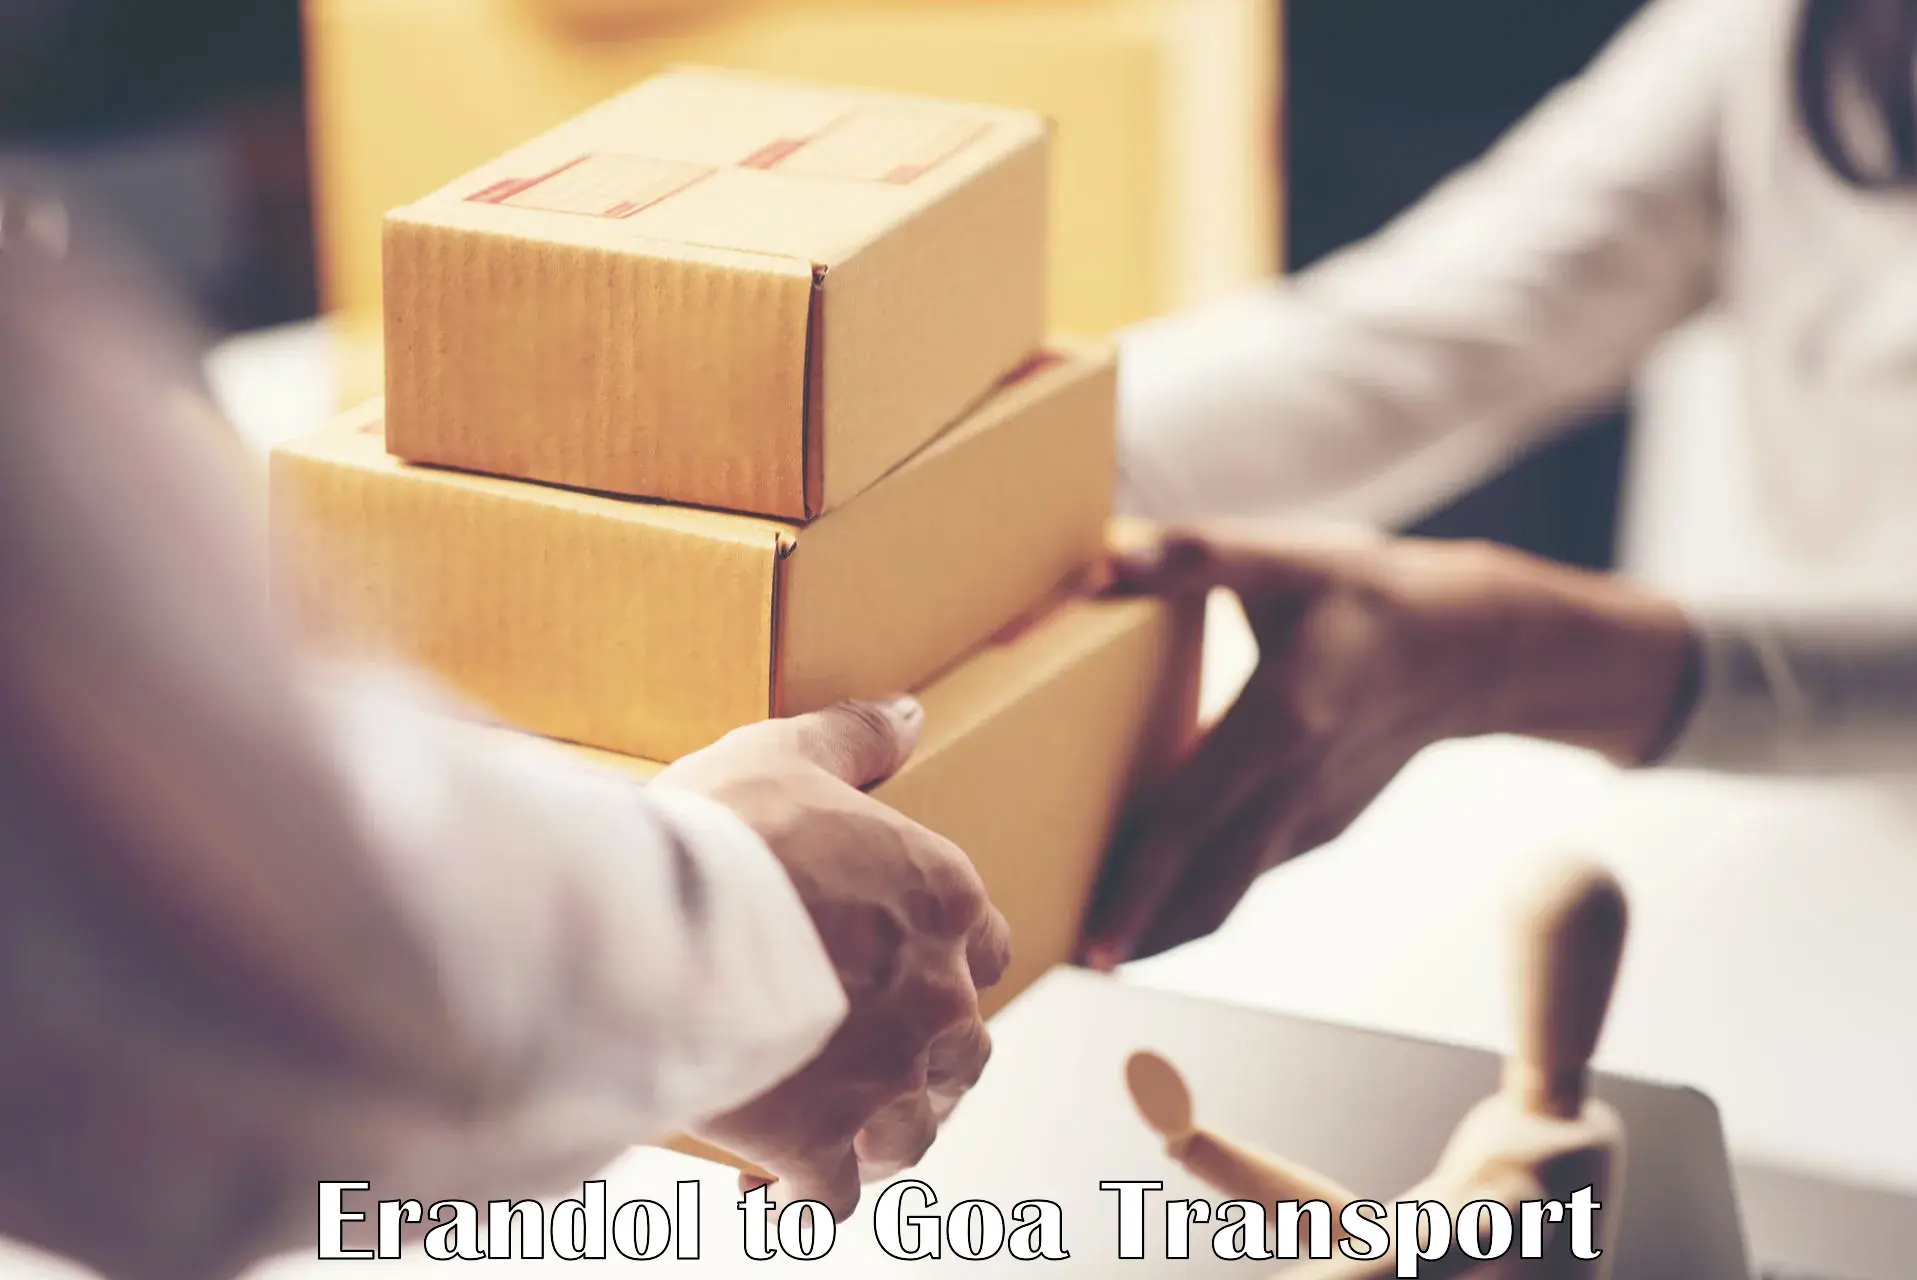 Daily parcel service transport in Erandol to Vasco da Gama